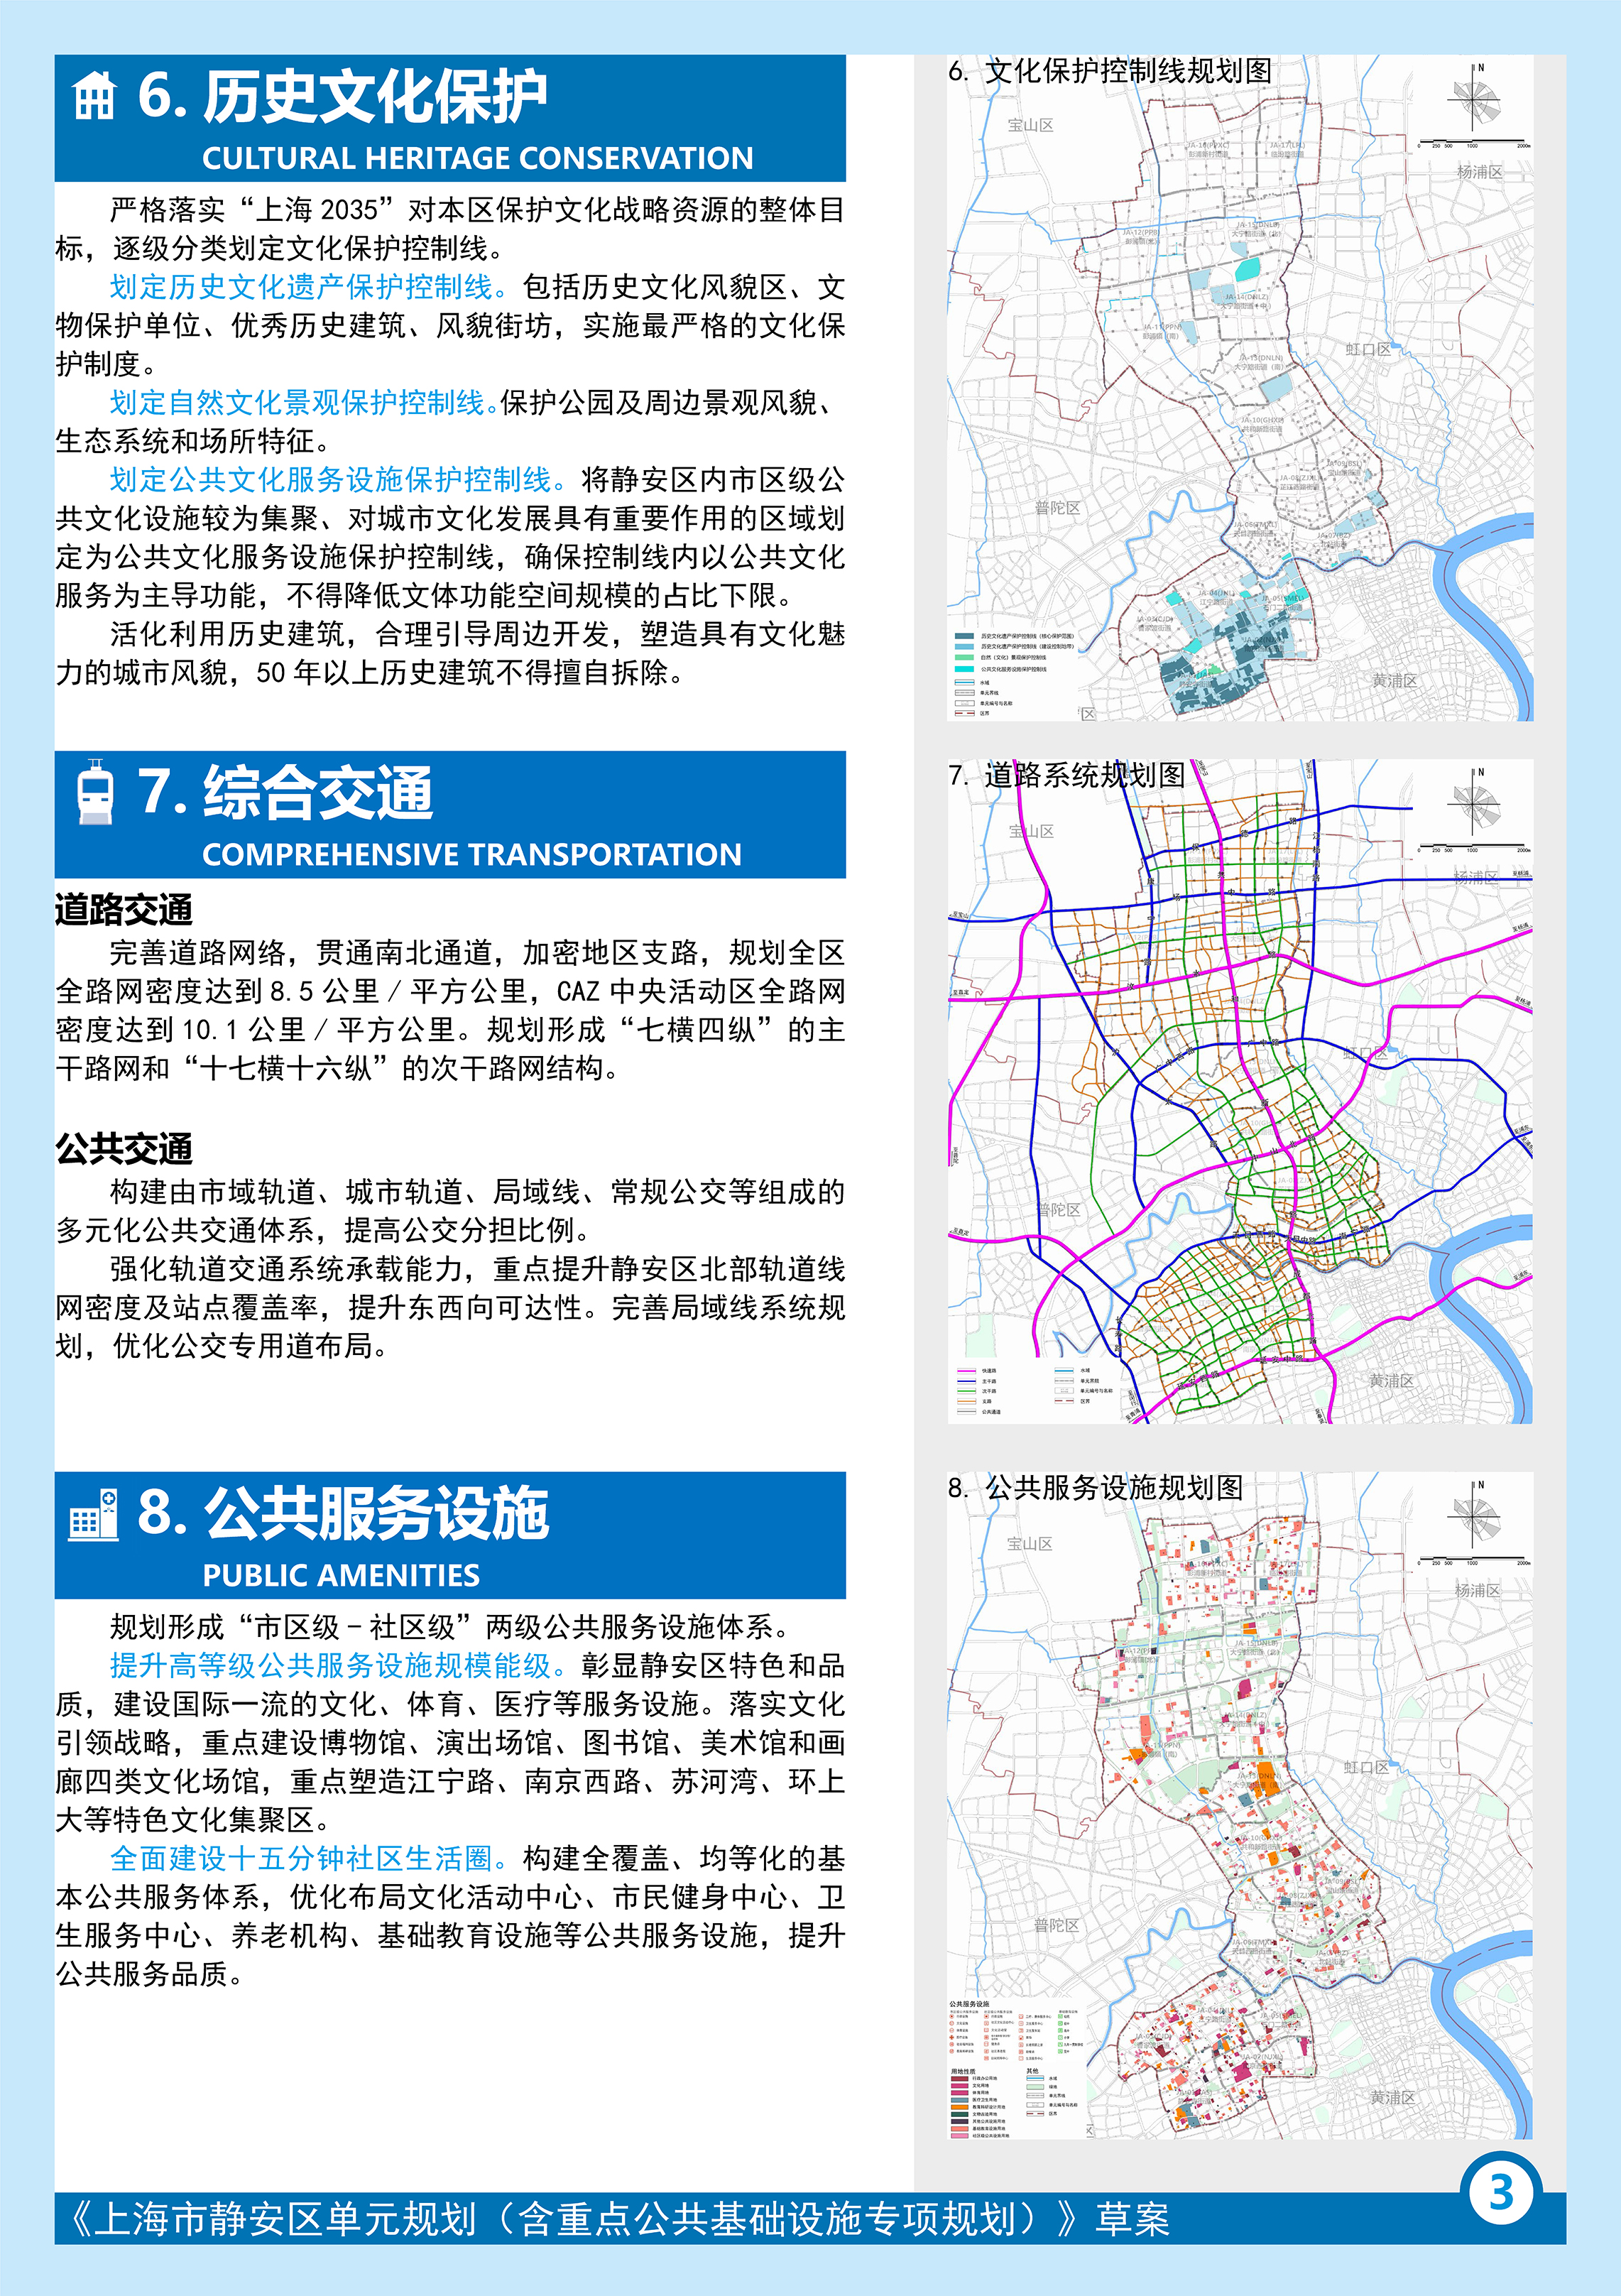 上海静安区动迁规划图图片